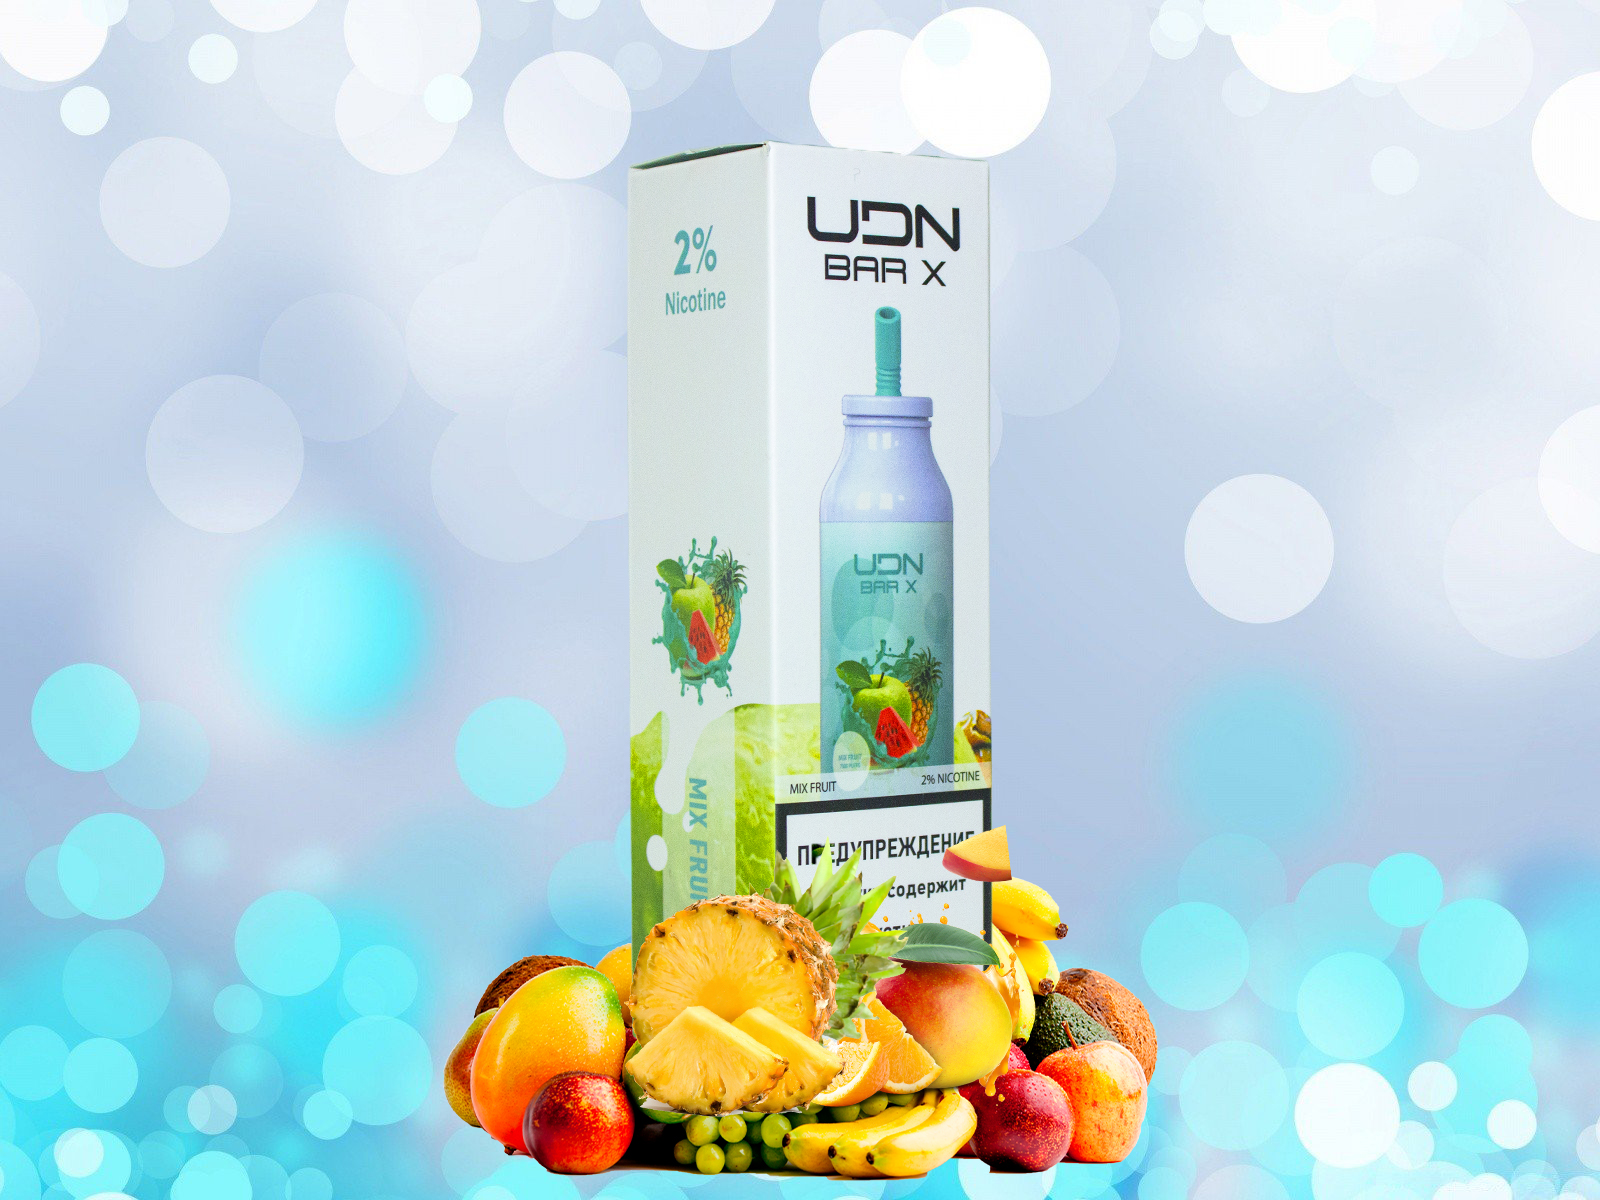 UDN BAR X 7000 / Mix fruit